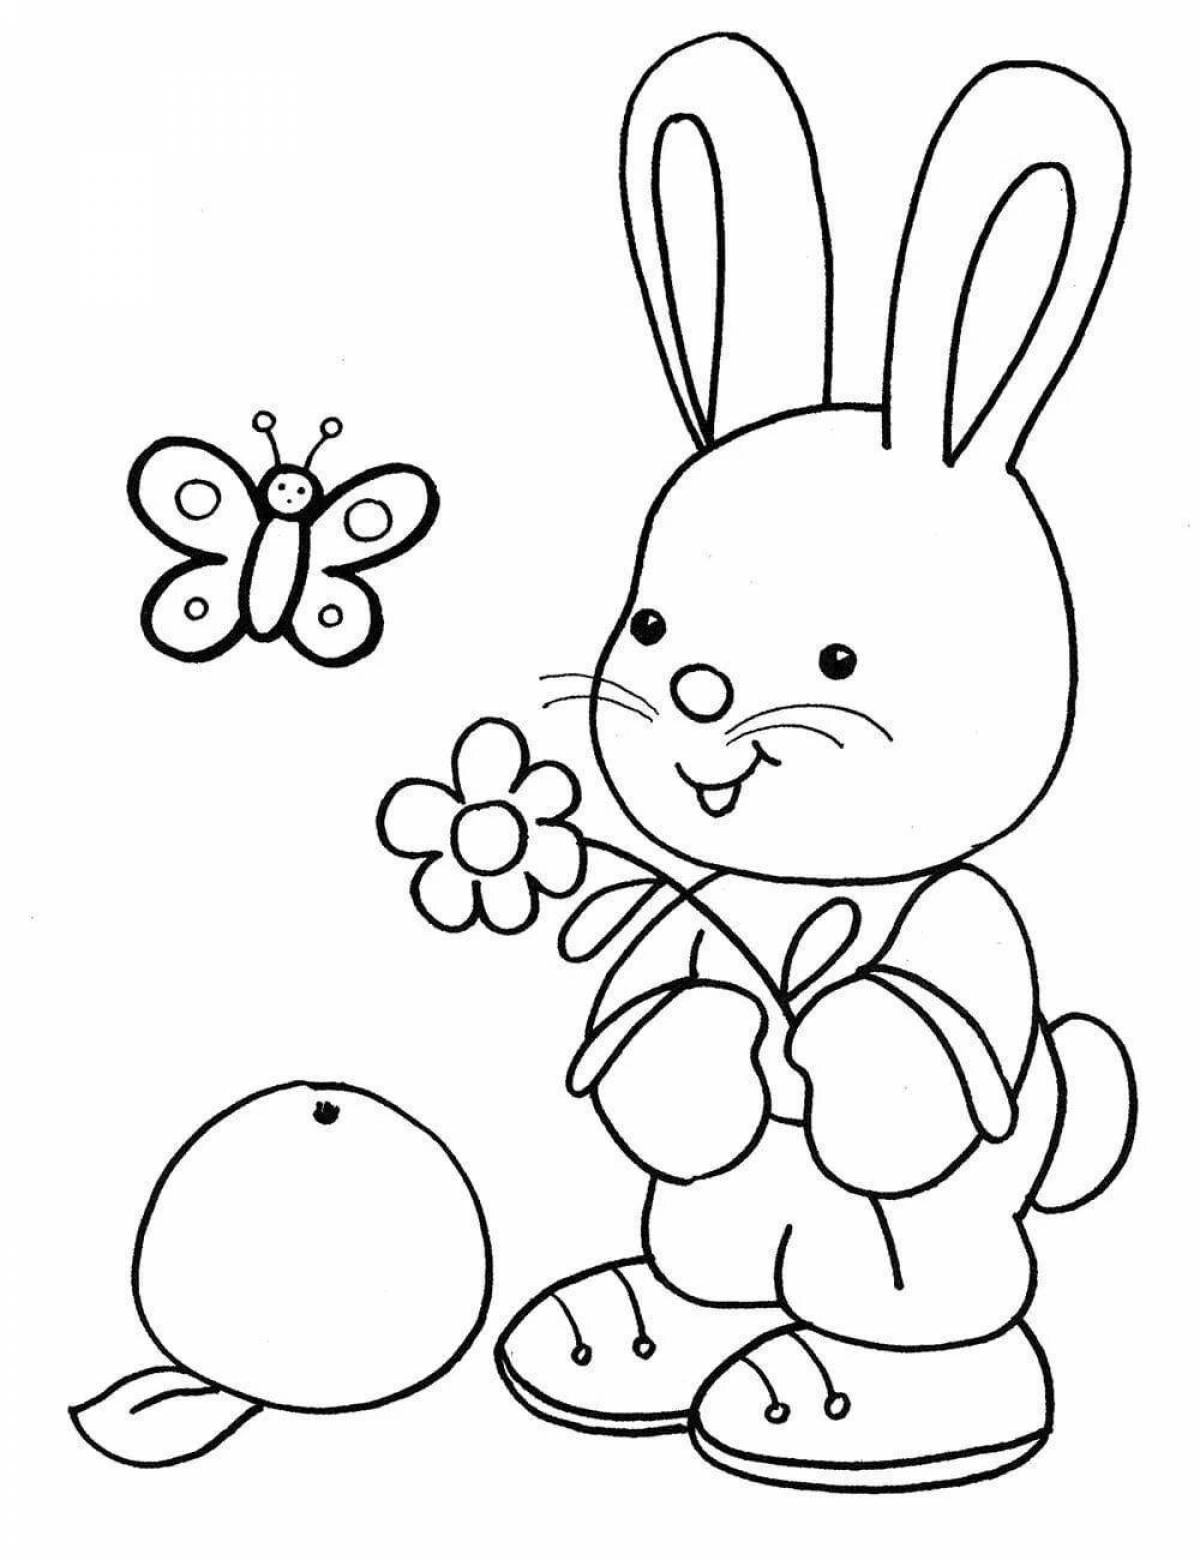 Забавная раскраска кролик для детей 2 лет